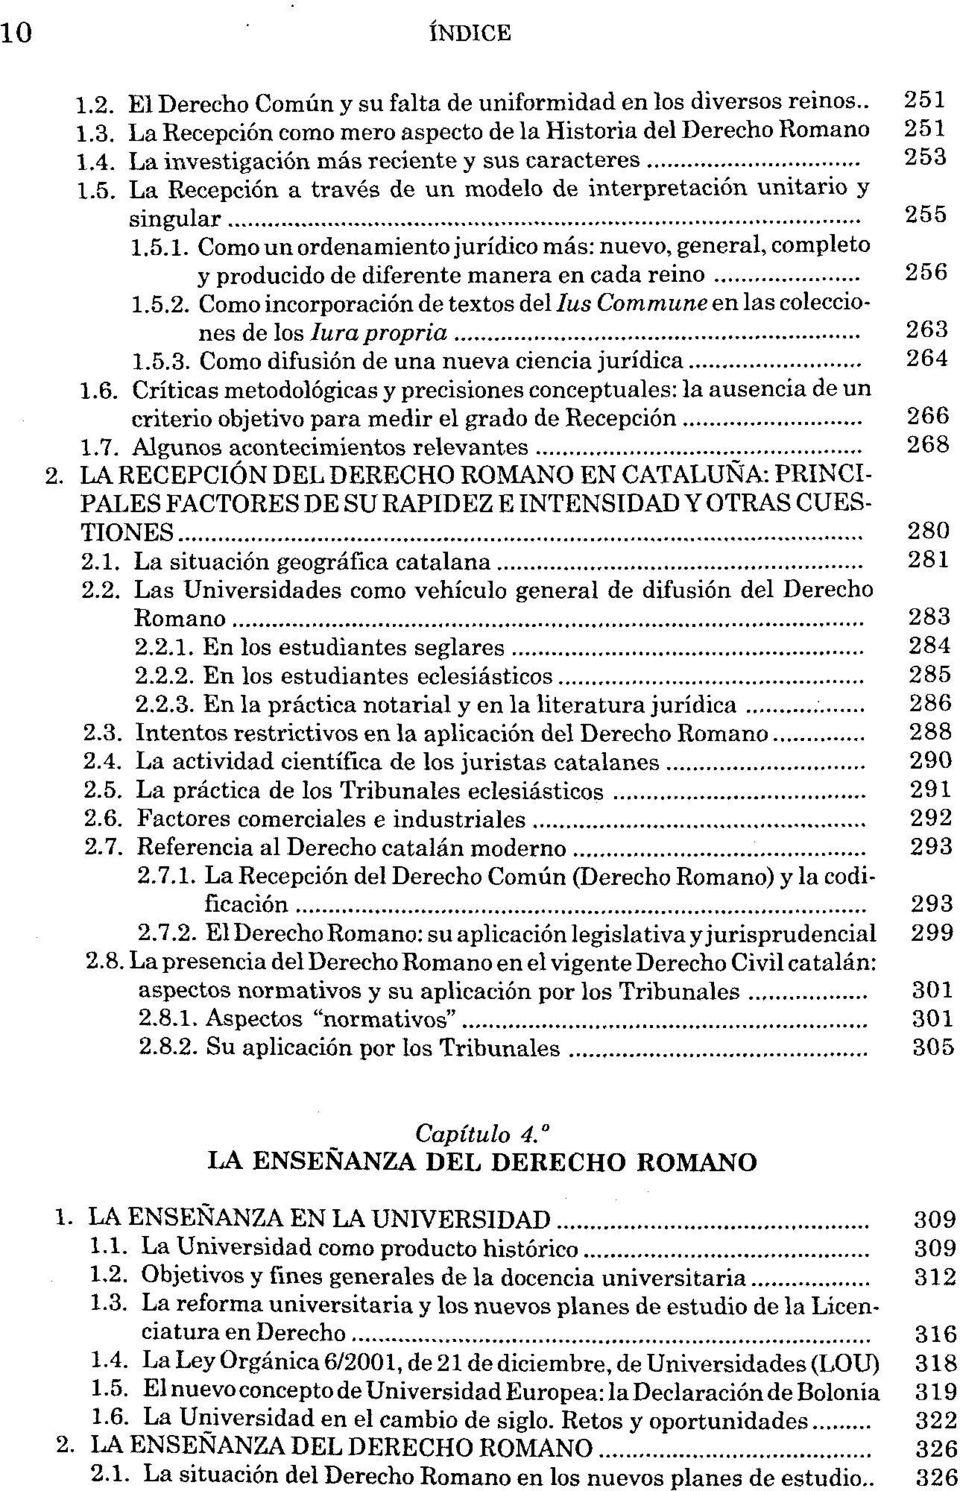 5.2. Como incorporaciön de textos del Ius Commune en las colecciones de los Iurapropria 263